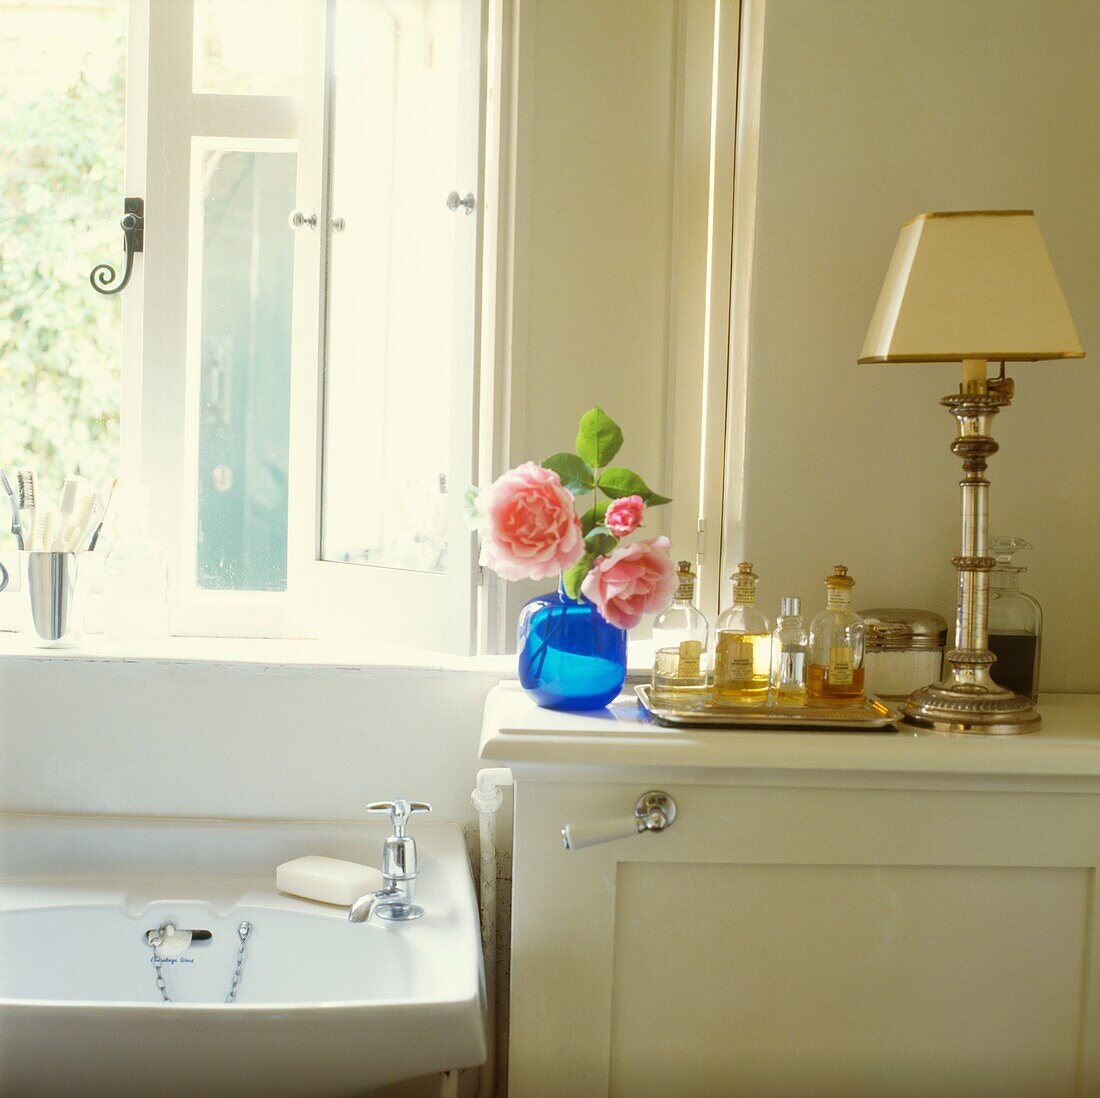 Waschbecken im Badezimmer unter dem Fenster mit Schnittblumen und einem Tablett mit Parfüm und Lampe